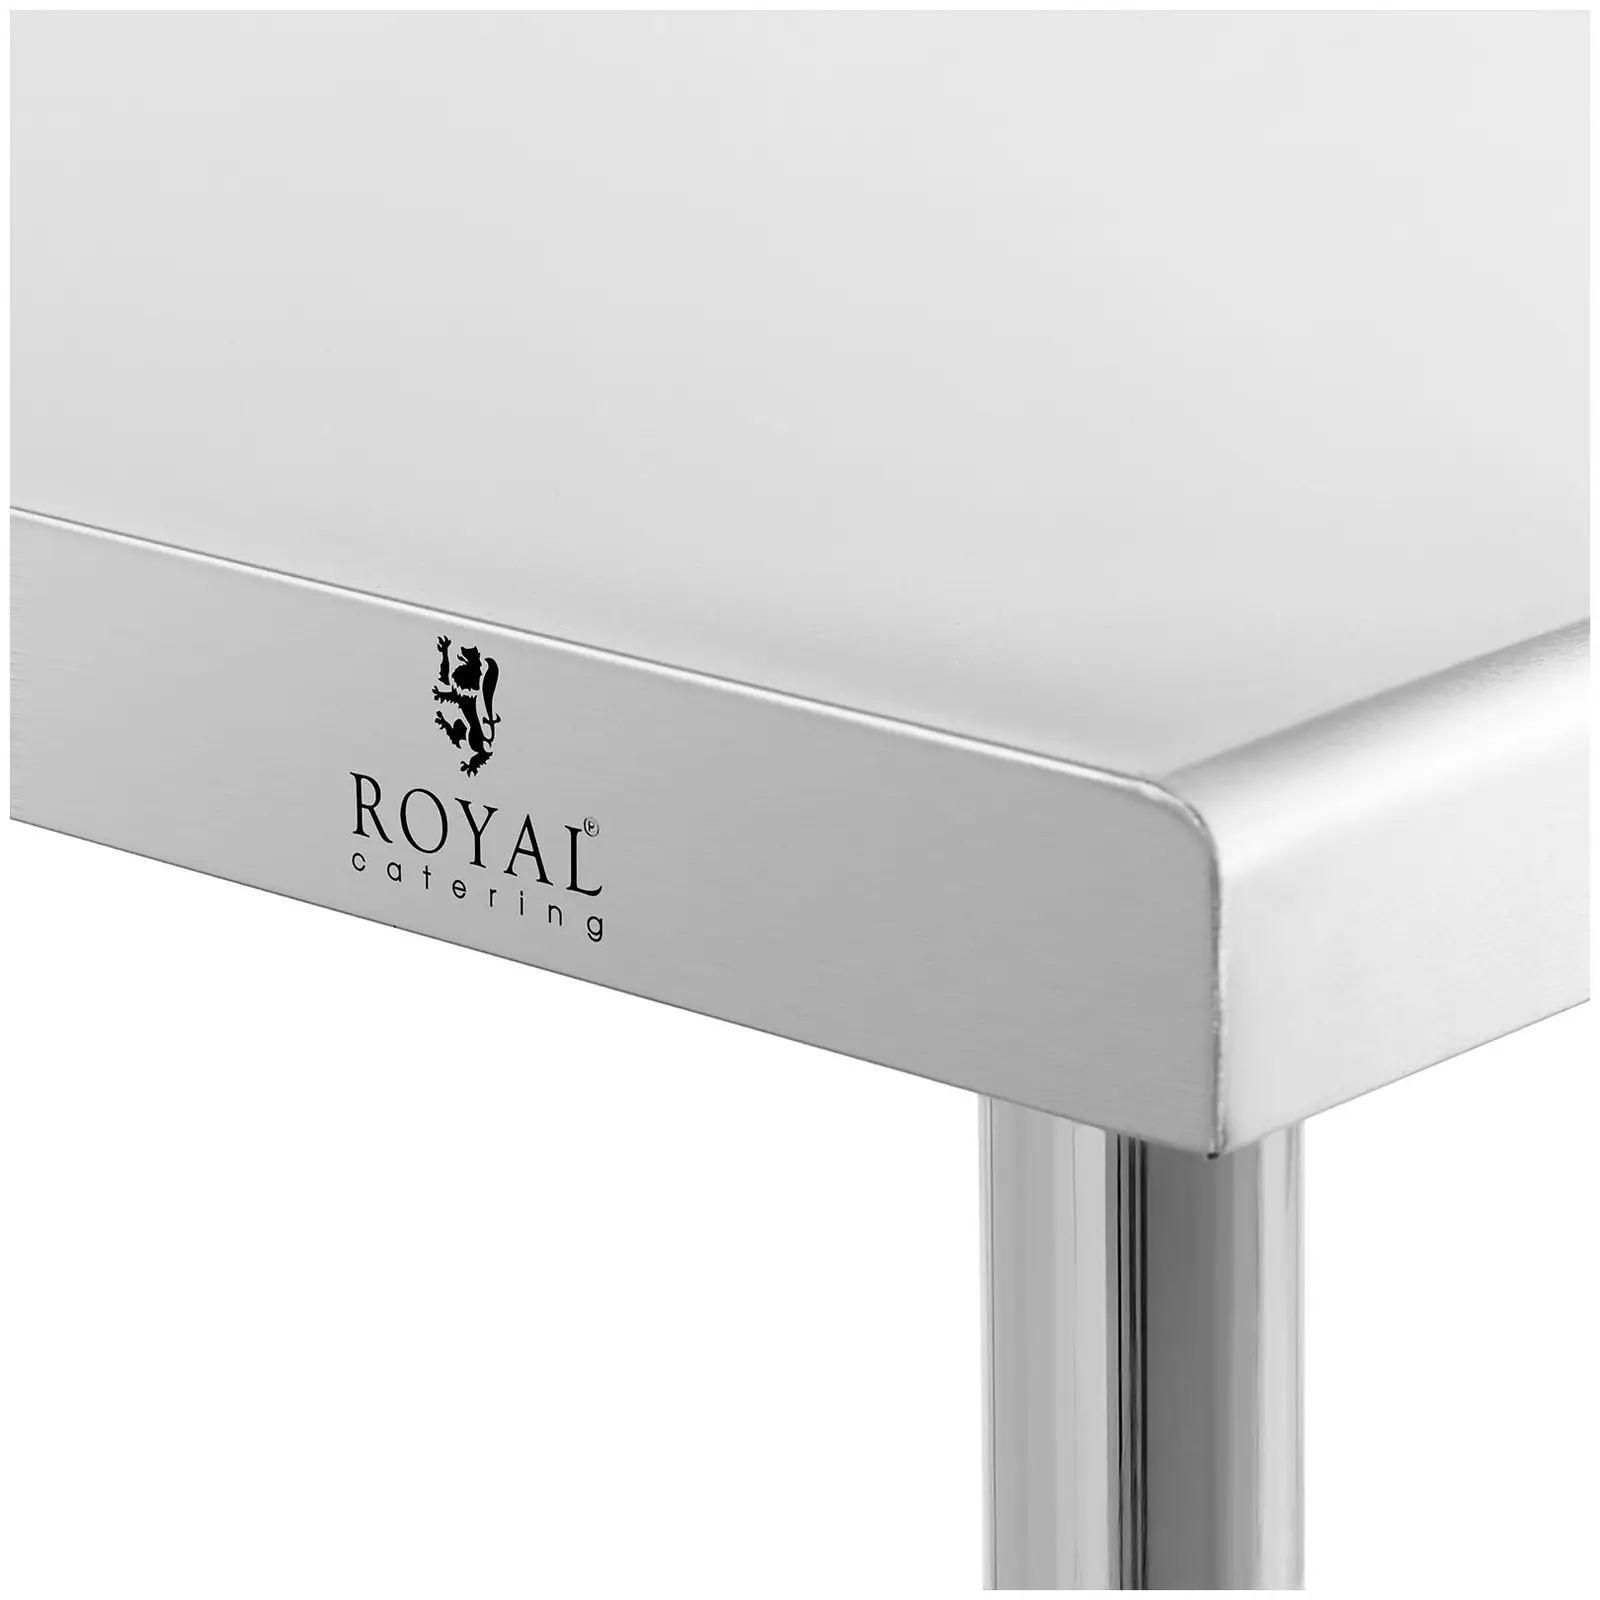 Teräspöytä - 200 x 90 cm - 100 kg kantavuus - Royal Catering